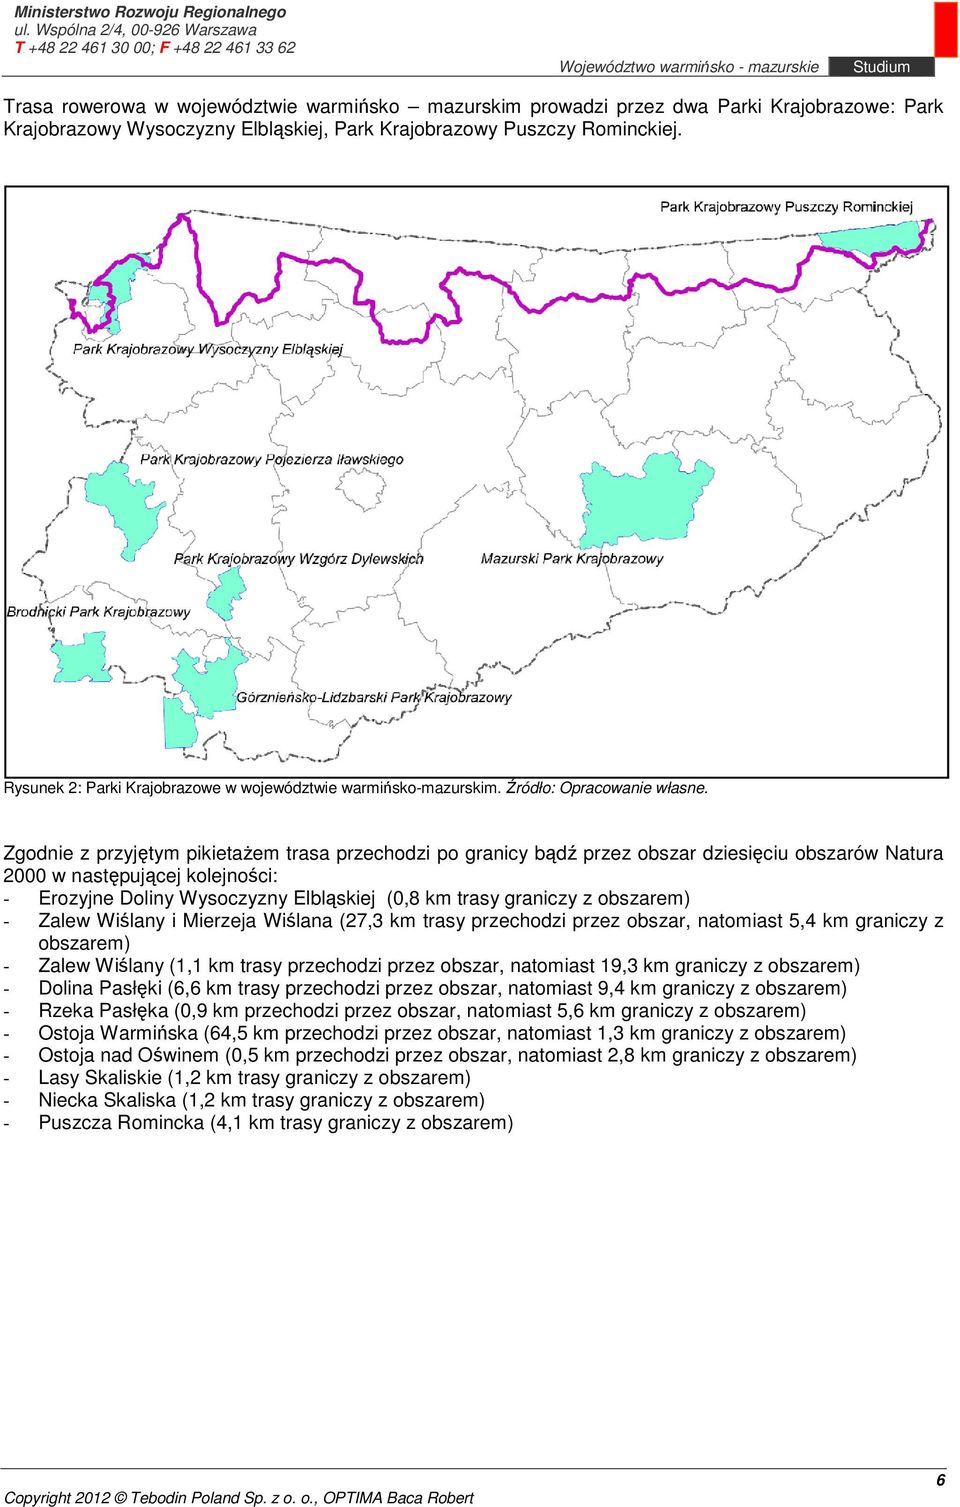 Zgodnie z przyjętym pikietażem trasa przechodzi po granicy bądź przez obszar dziesięciu obszarów Natura 2000 w następującej kolejności: - Erozyjne Doliny Wysoczyzny Elbląskiej (0,8 km trasy graniczy